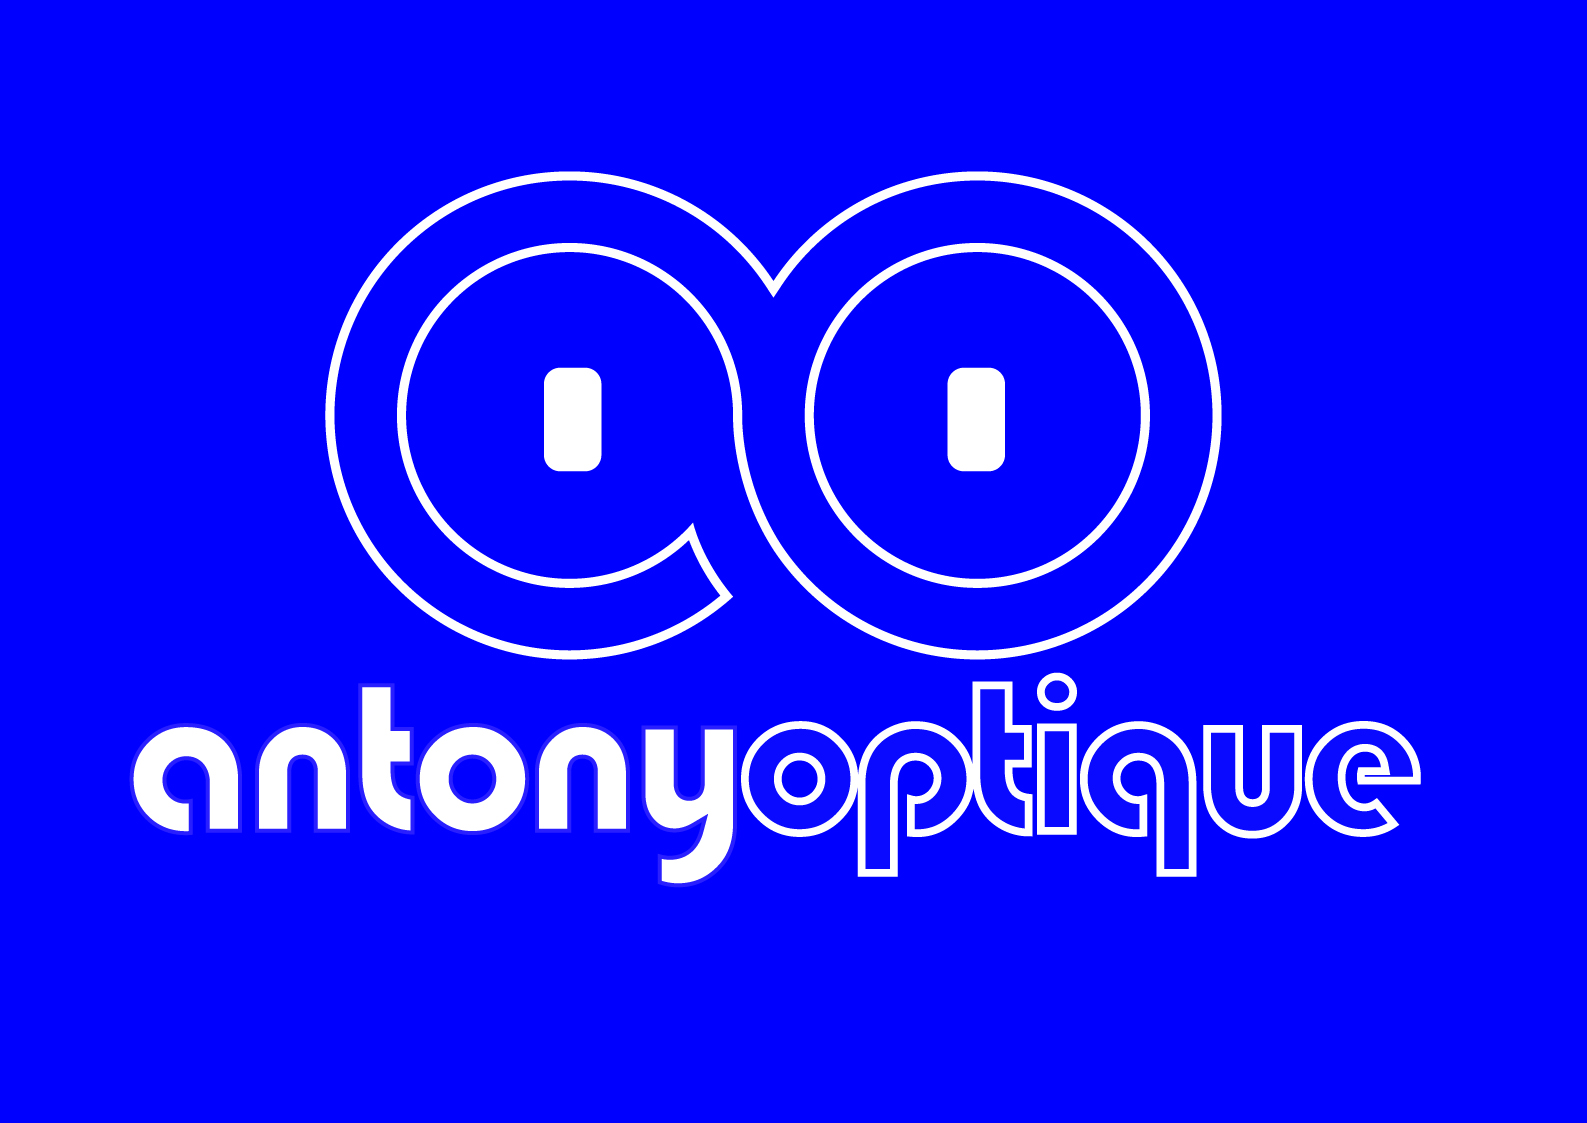 Antony Optique